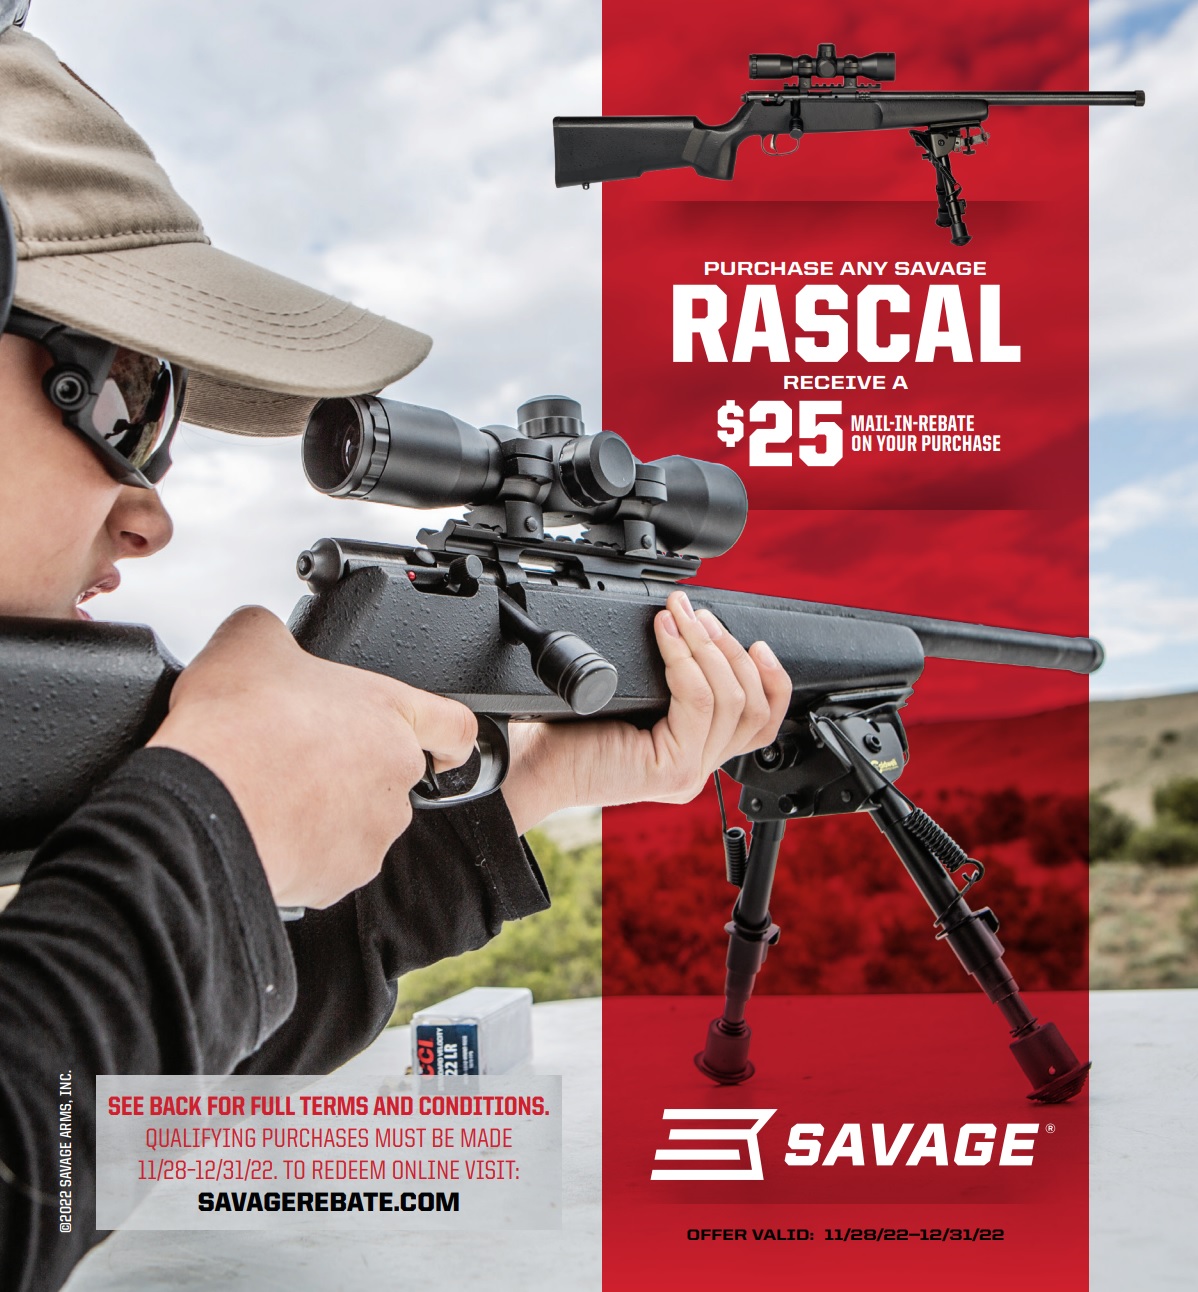 DEC Savage Rascal Rebate Gun Rebates